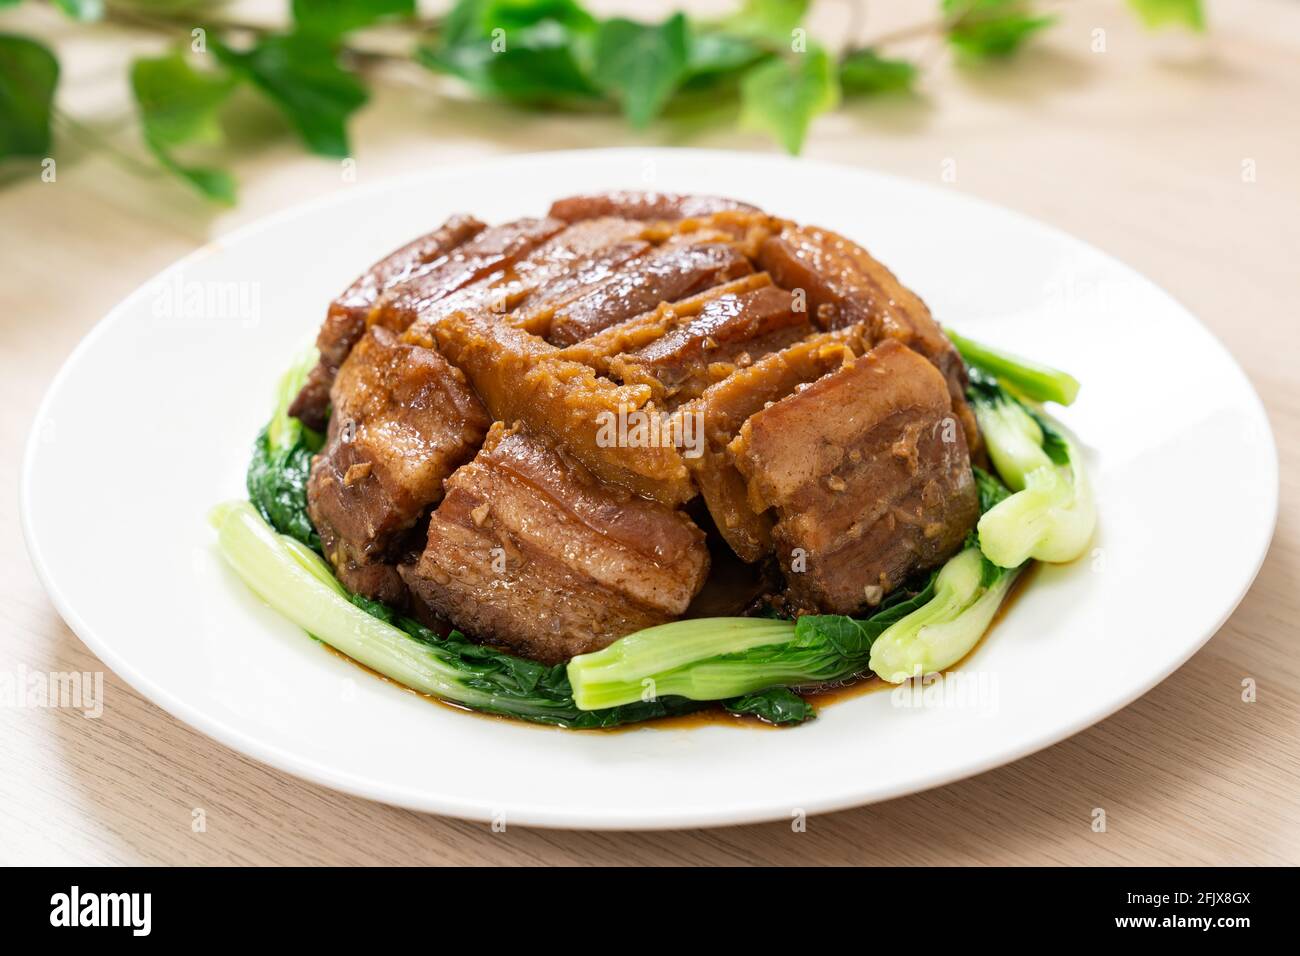 Poitrine de porc braisée avec igname servie avec des légumes verts Banque D'Images